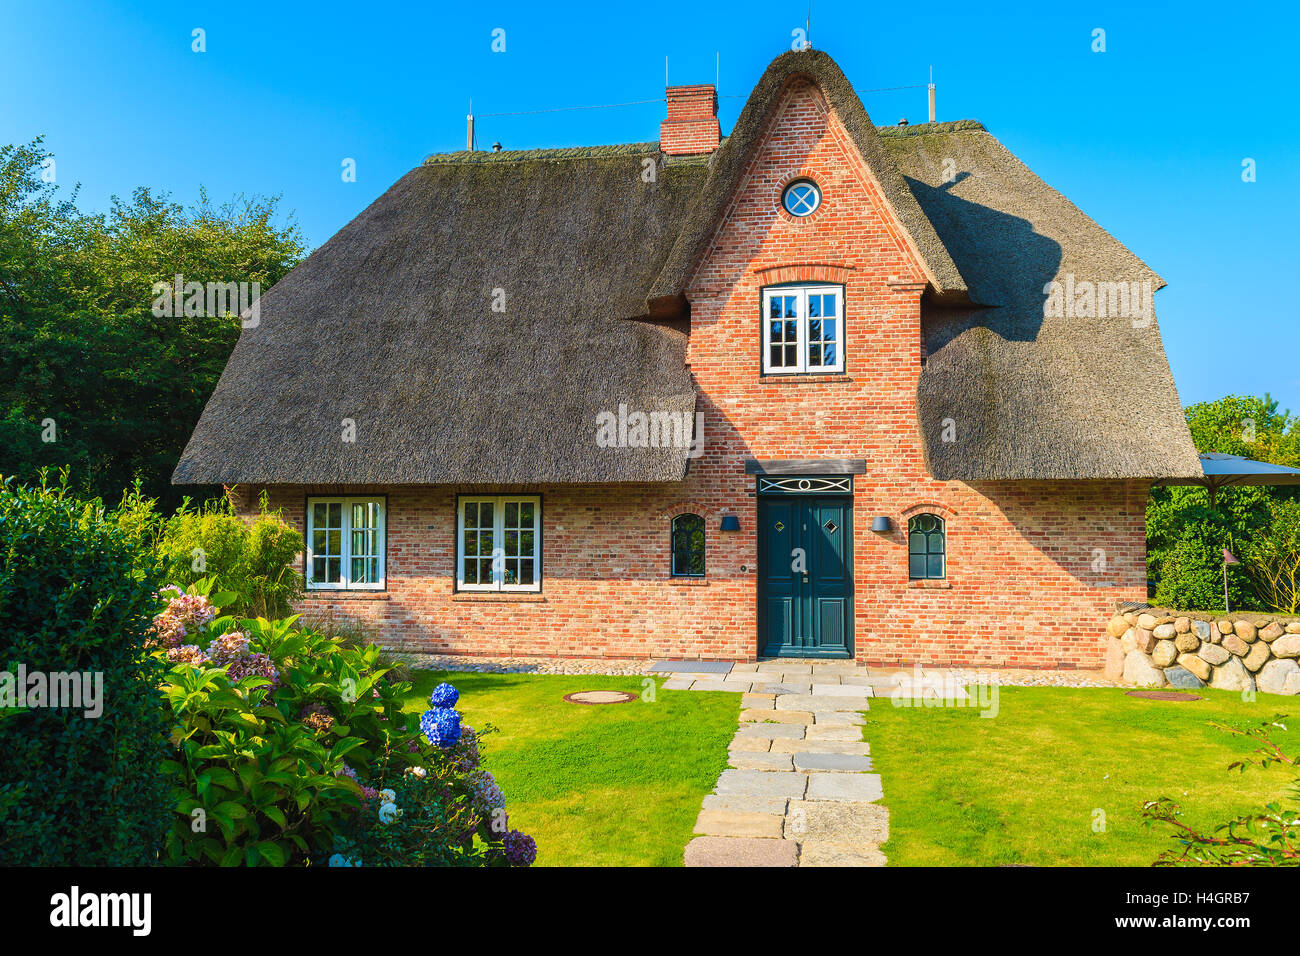 L'île de Sylt, ALLEMAGNE - SEP 9, 2016 : le frison typique maison en brique rouge avec toit de paille à Kampen village sur l'île de Sylt, Allemagne. Banque D'Images